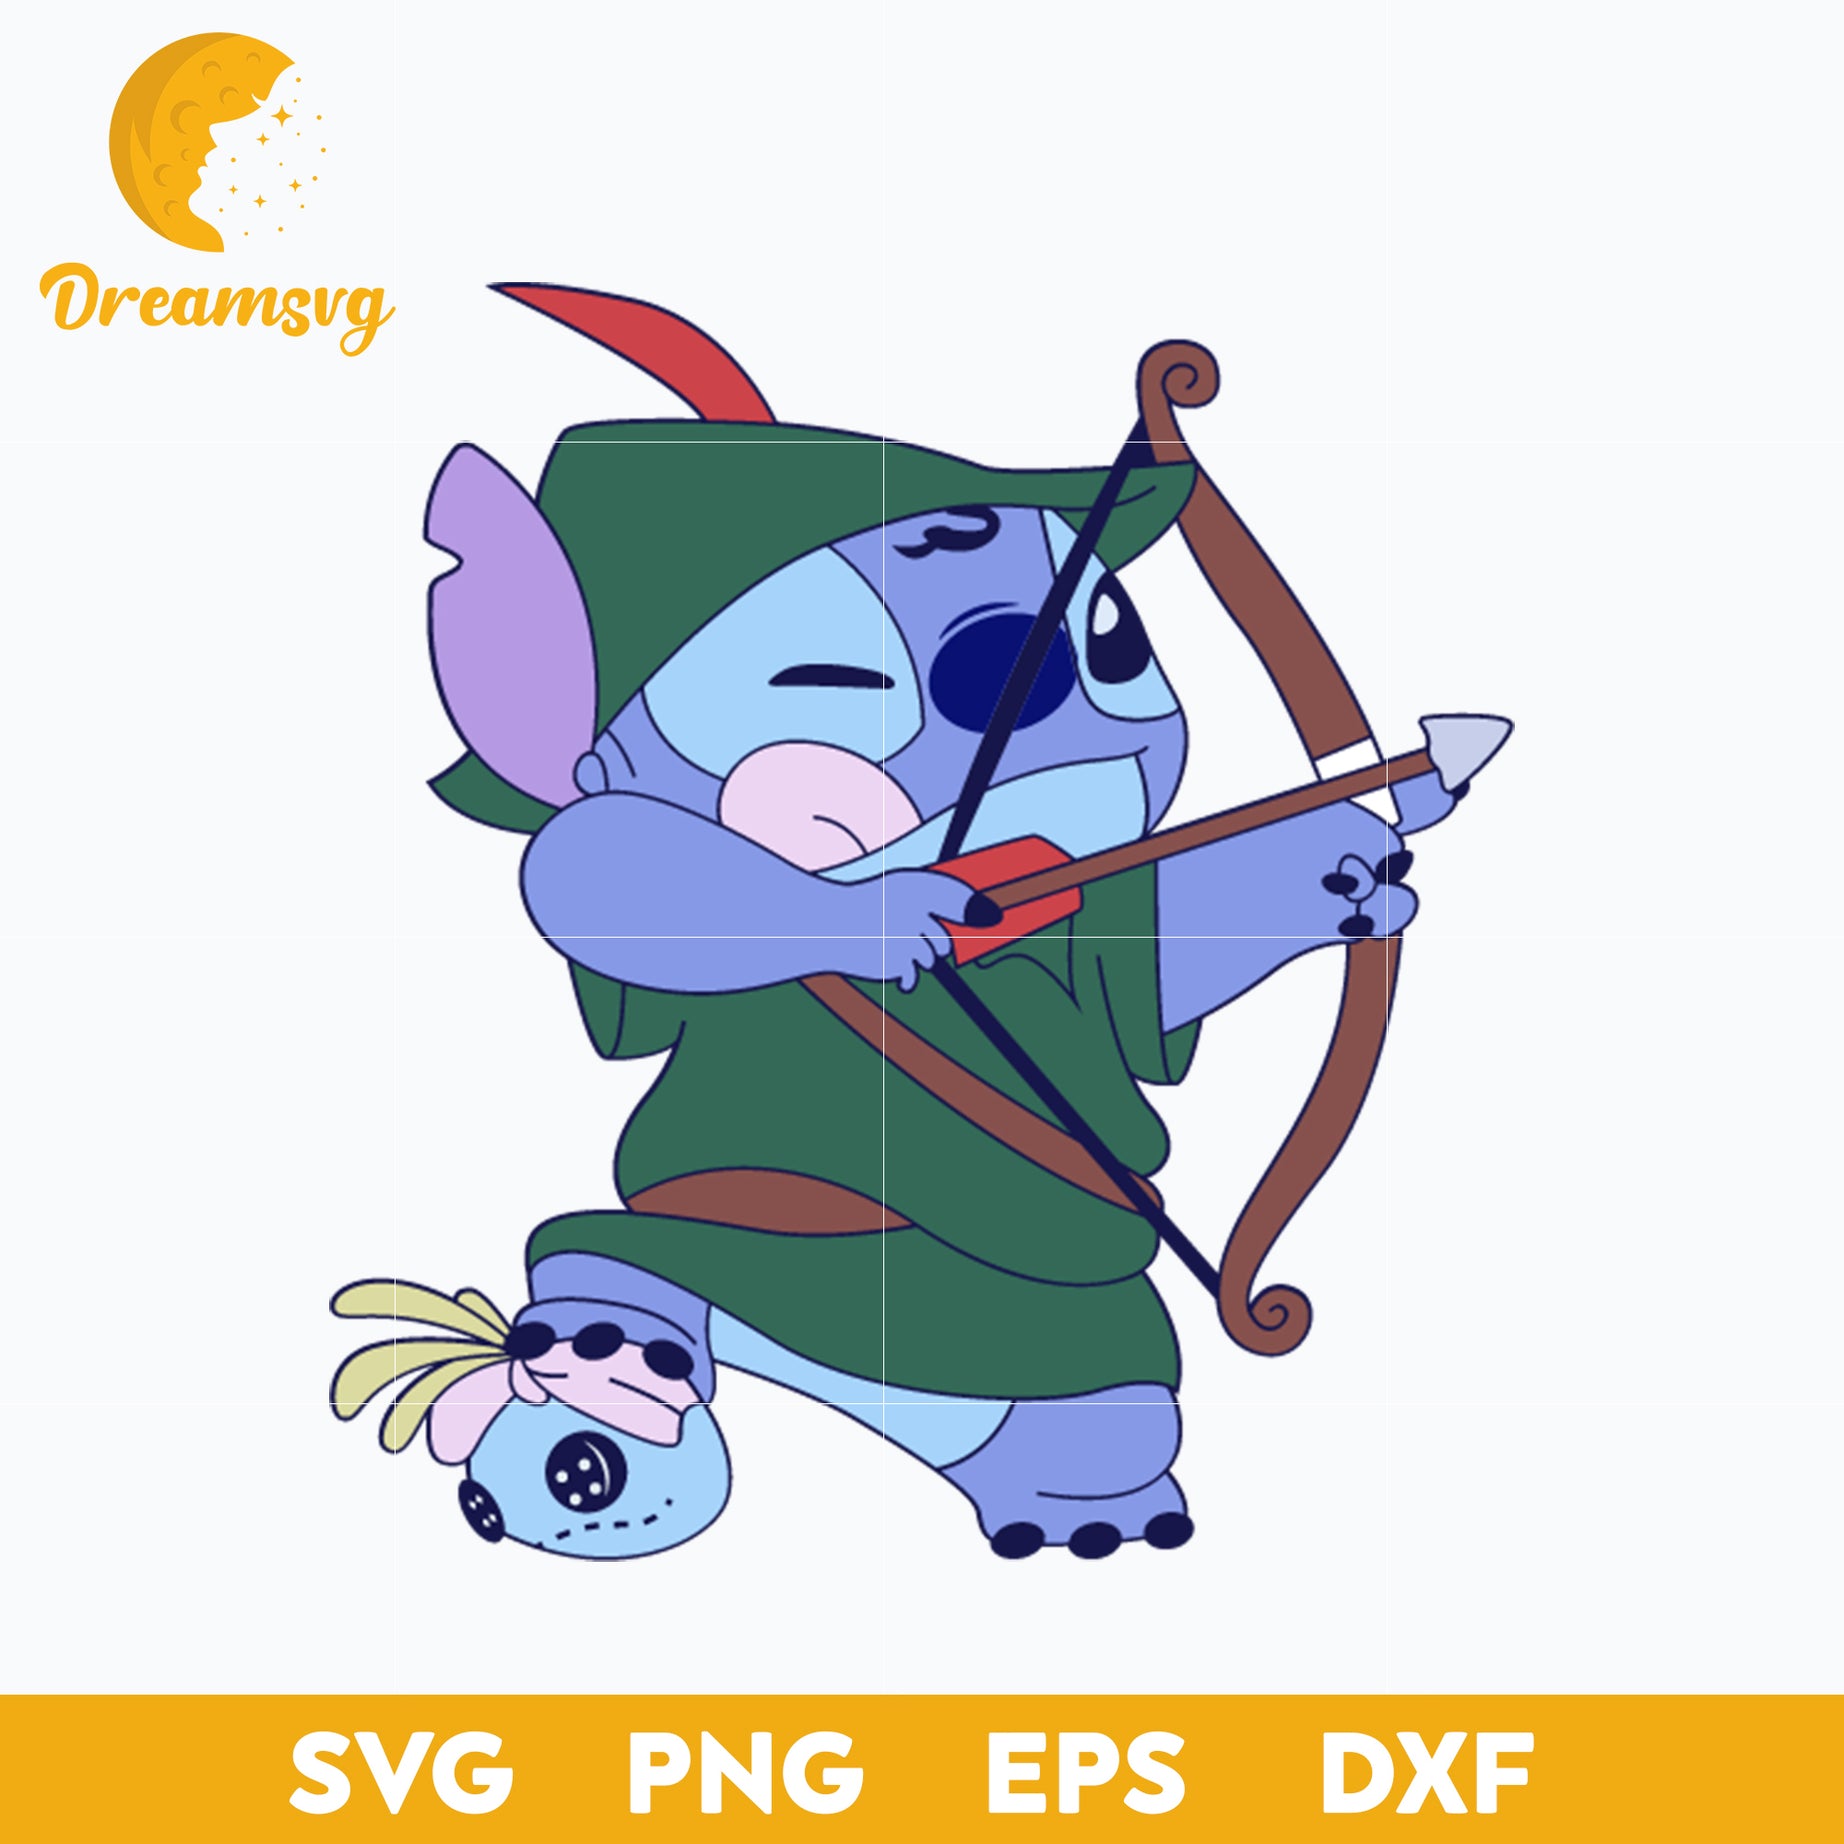 Stitch Robin Hood SVG, Blue Alien Dress Up SVG, Stitch Archer SVG, Stitch Halloween SVG, PNG, DXF, EPS Digital File.